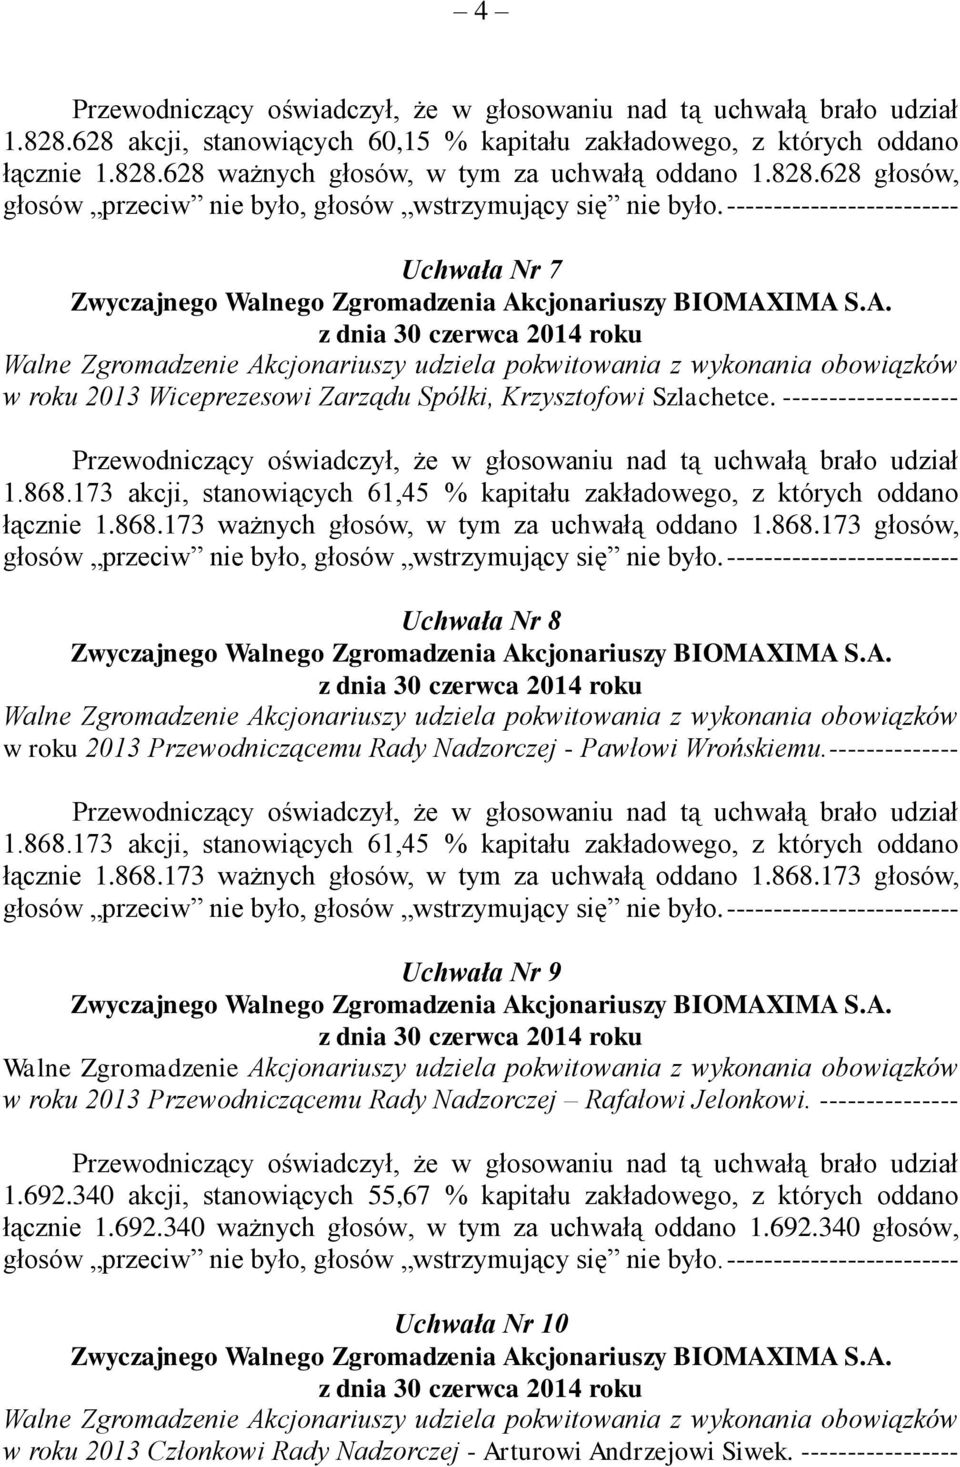 -------------- Uchwała Nr 9 w roku 2013 Przewodniczącemu Rady Nadzorczej Rafałowi Jelonkowi. --------------- 1.692.